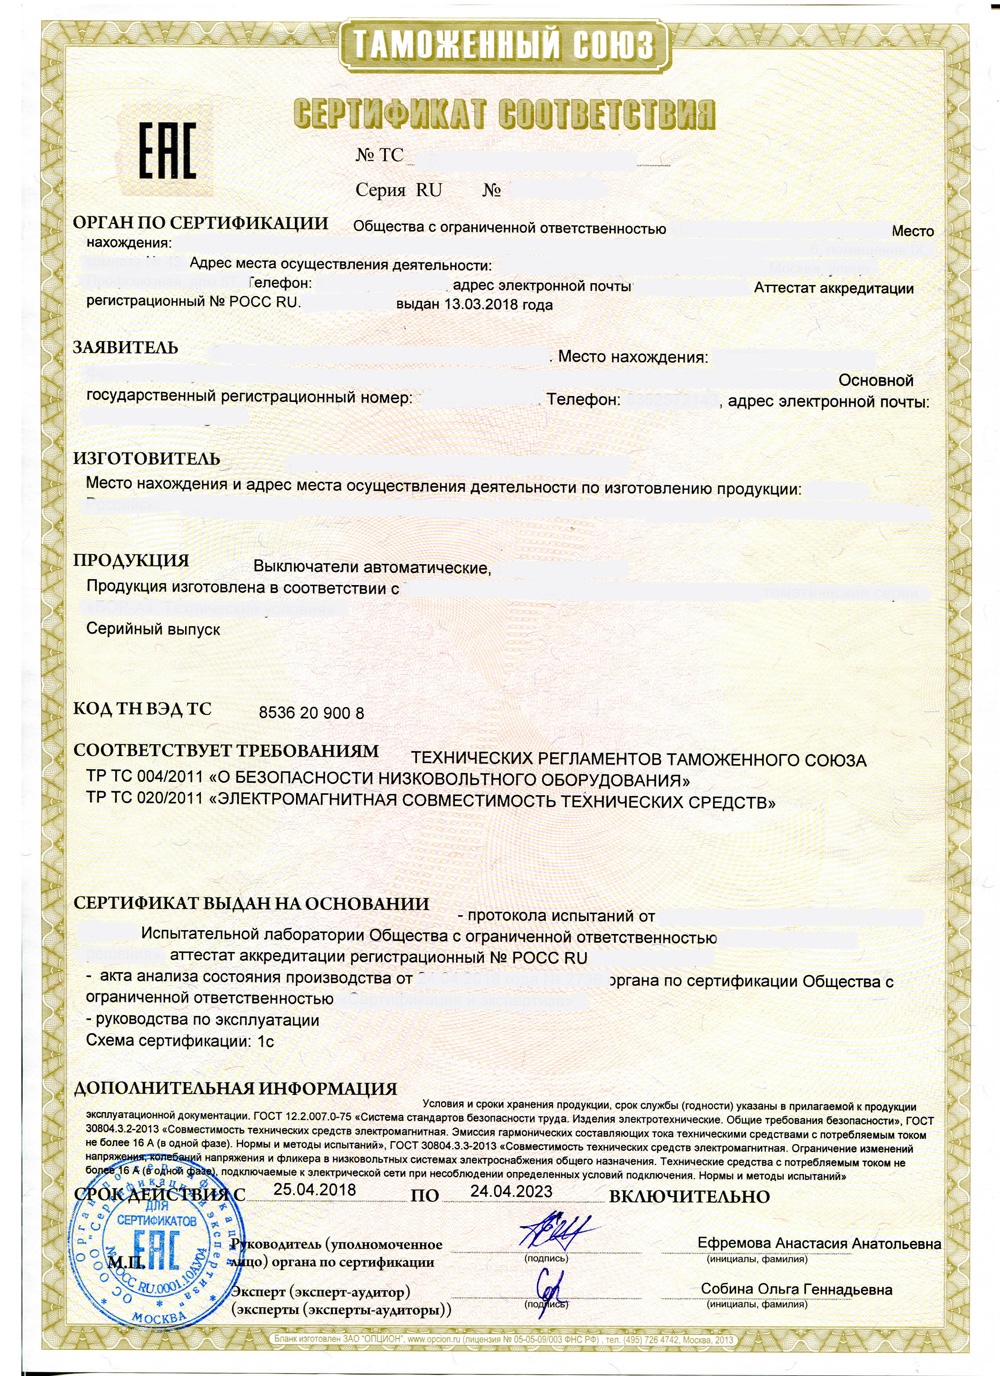 Certificat TR CU 004 020